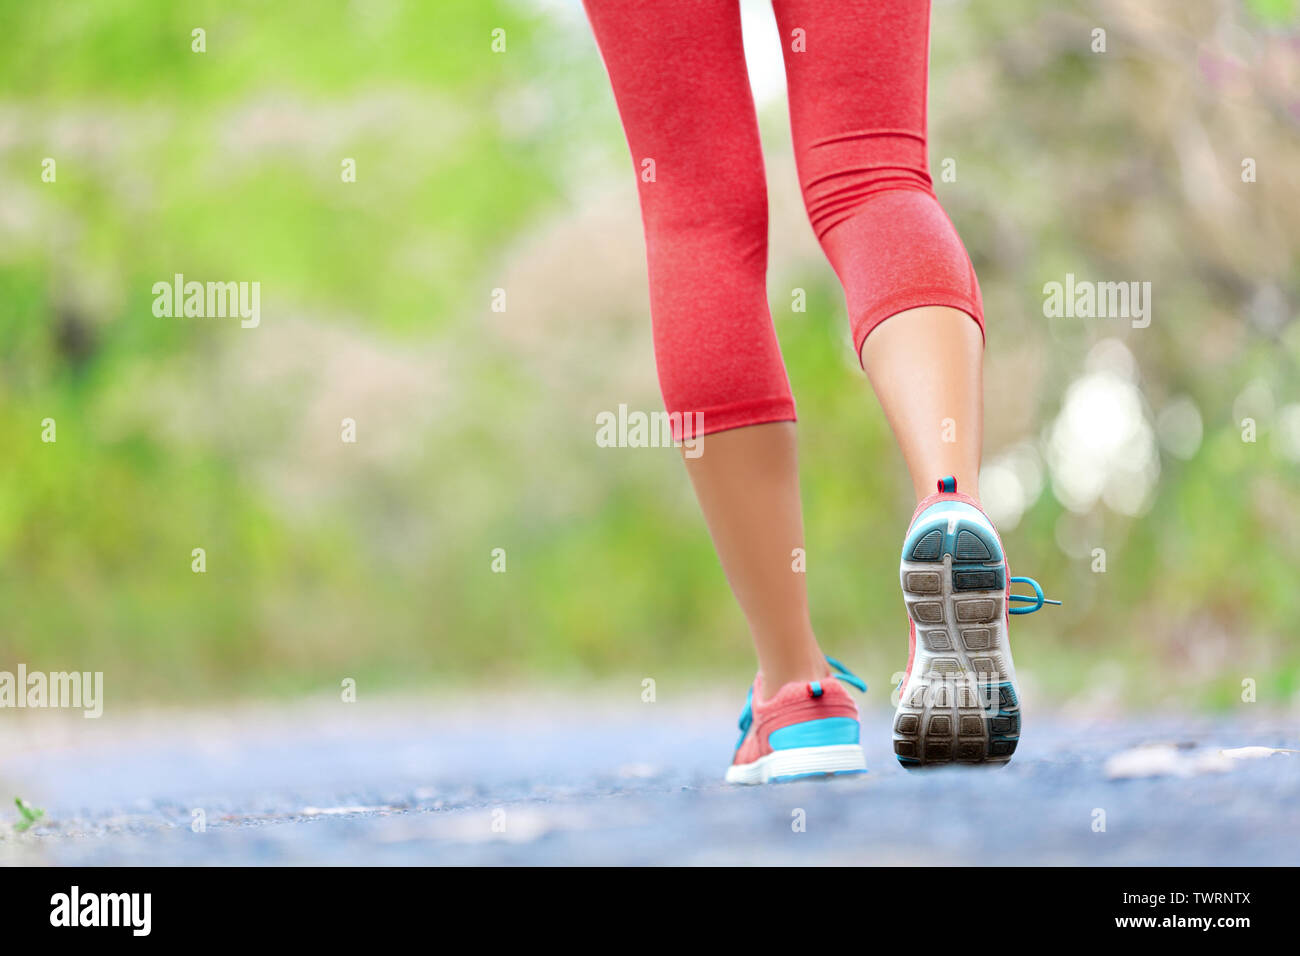 Frau mit athletische Beine auf Tippen oder auf der Spur laufen im Wald im gesunden Lebensstil Konzept mit Nahaufnahme auf die Laufschuhe. Weibliche Sportler joggen und Training im Freien. Stockfoto